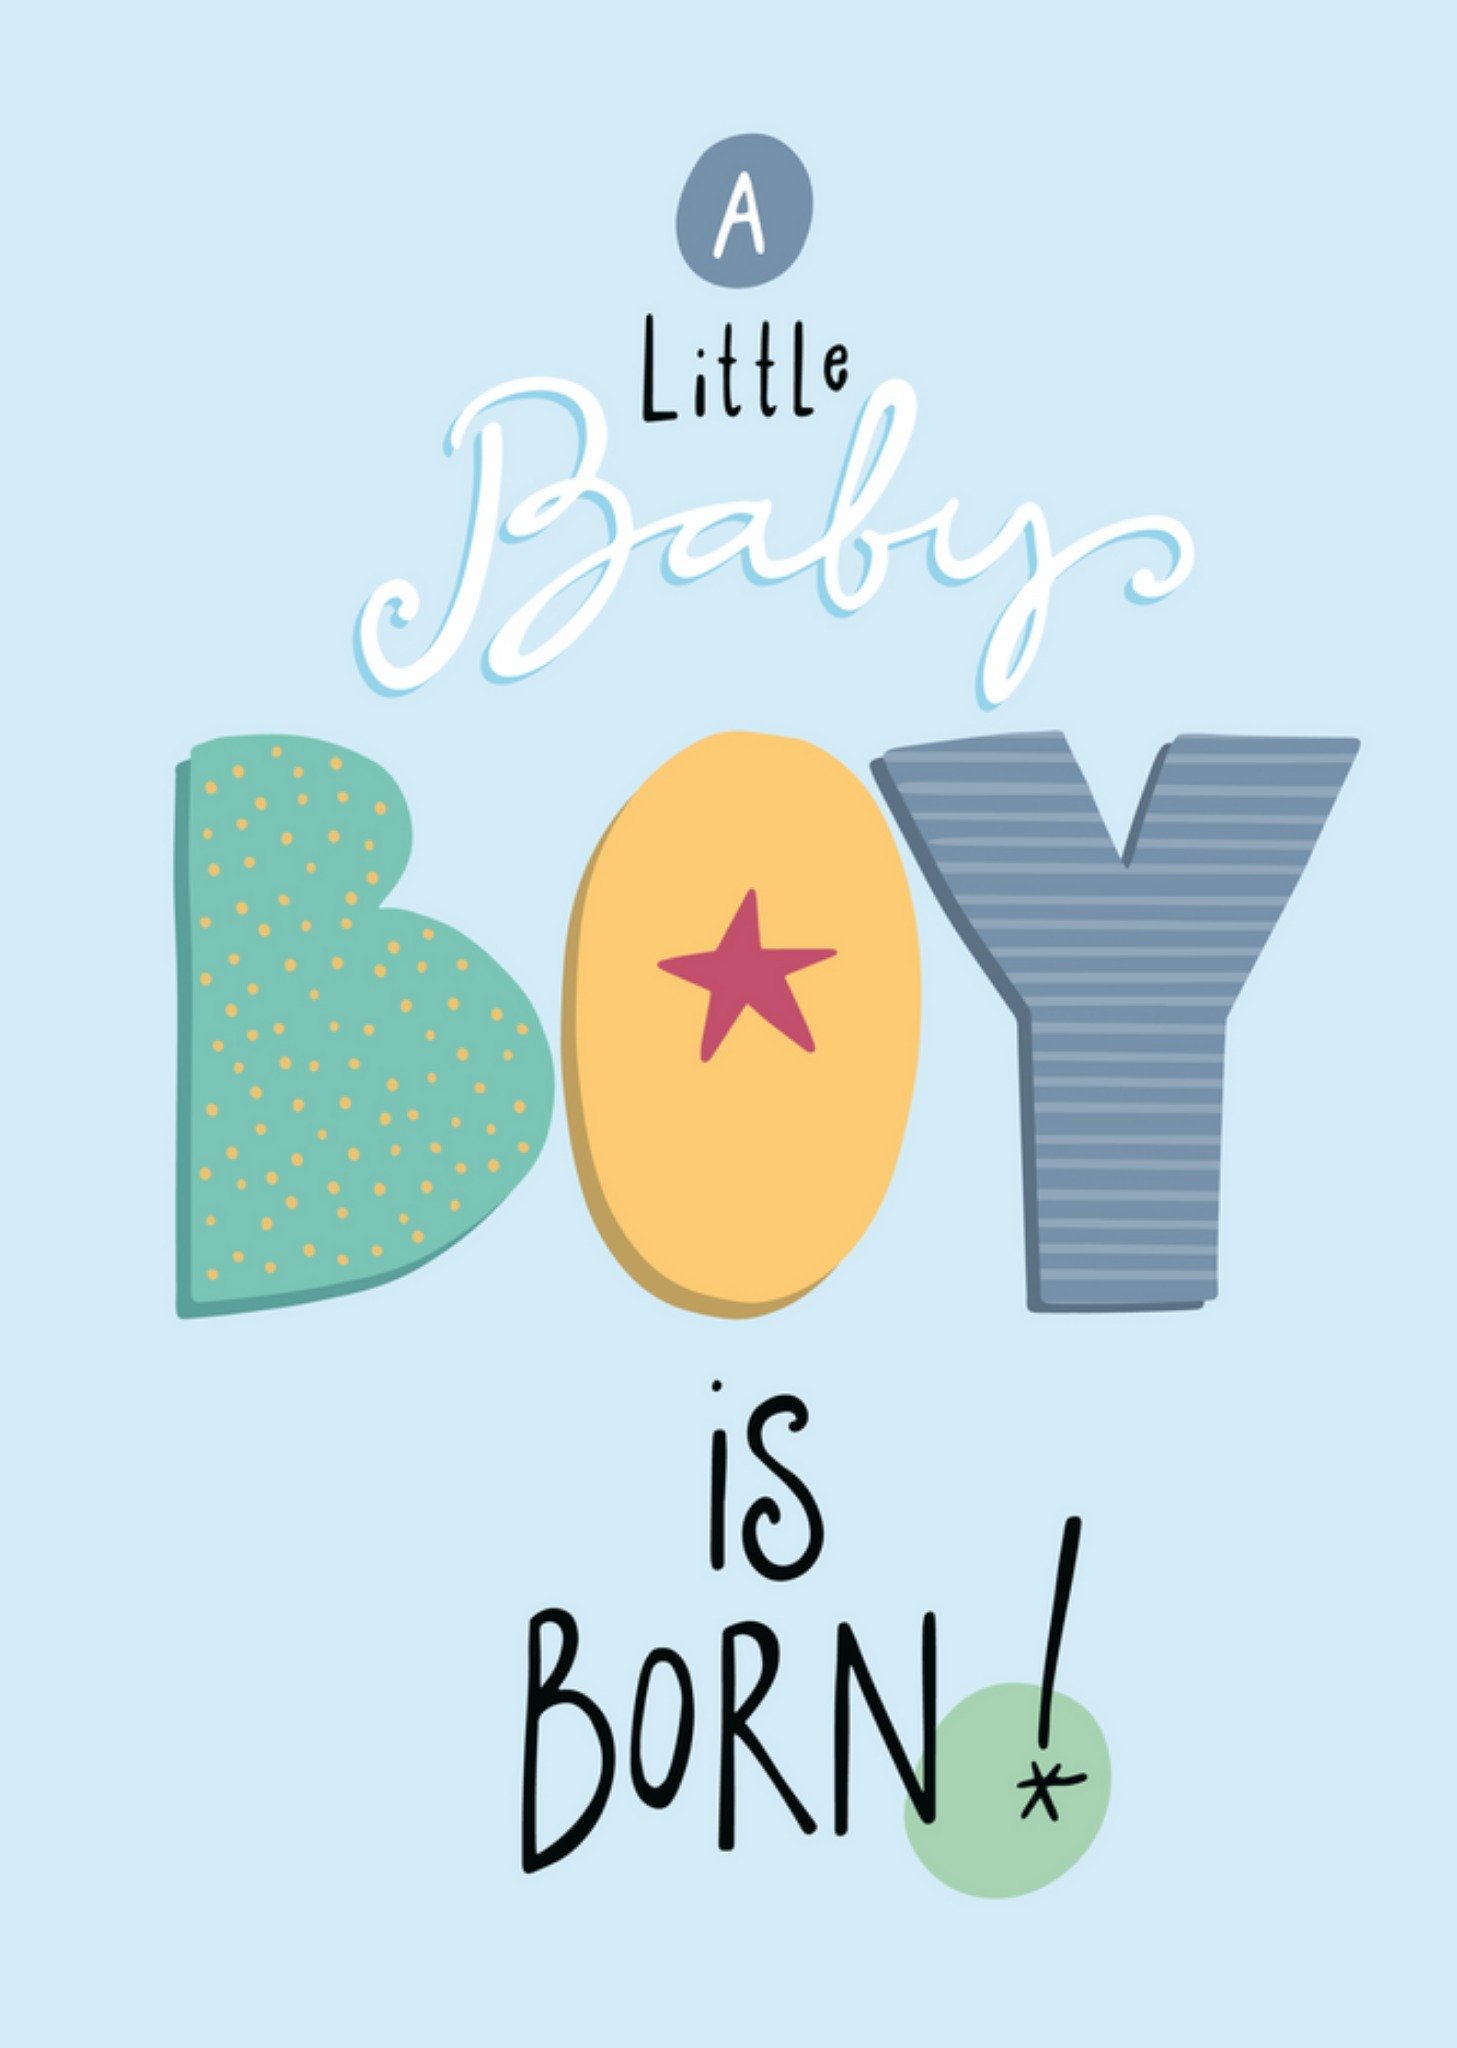 Funny Side Up - Geboorte jongen - Baby boy